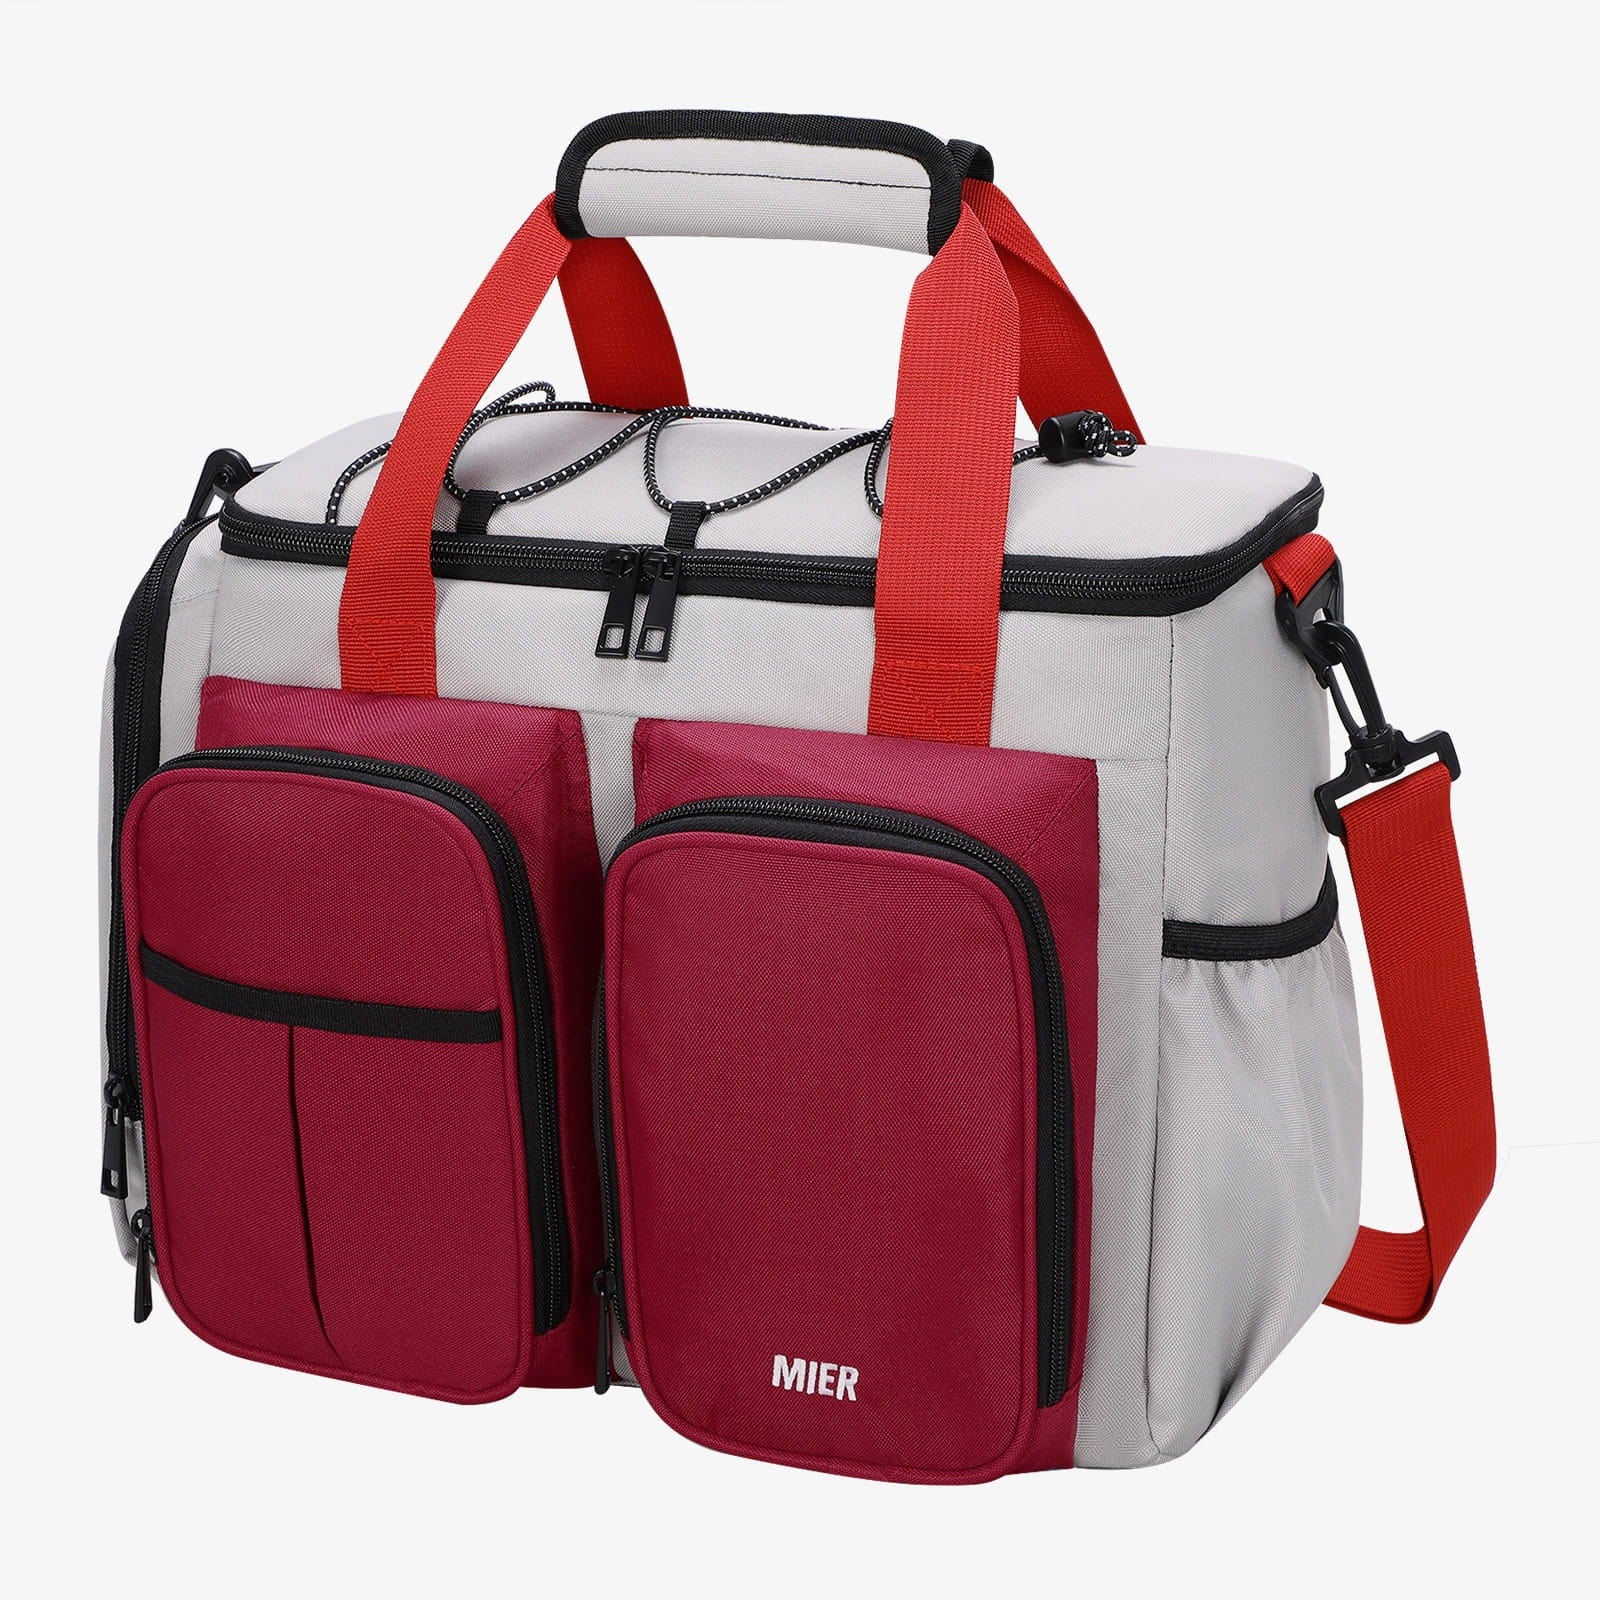 Multi-pack Jumbo Zip Storage Bags - L, XL, XXL